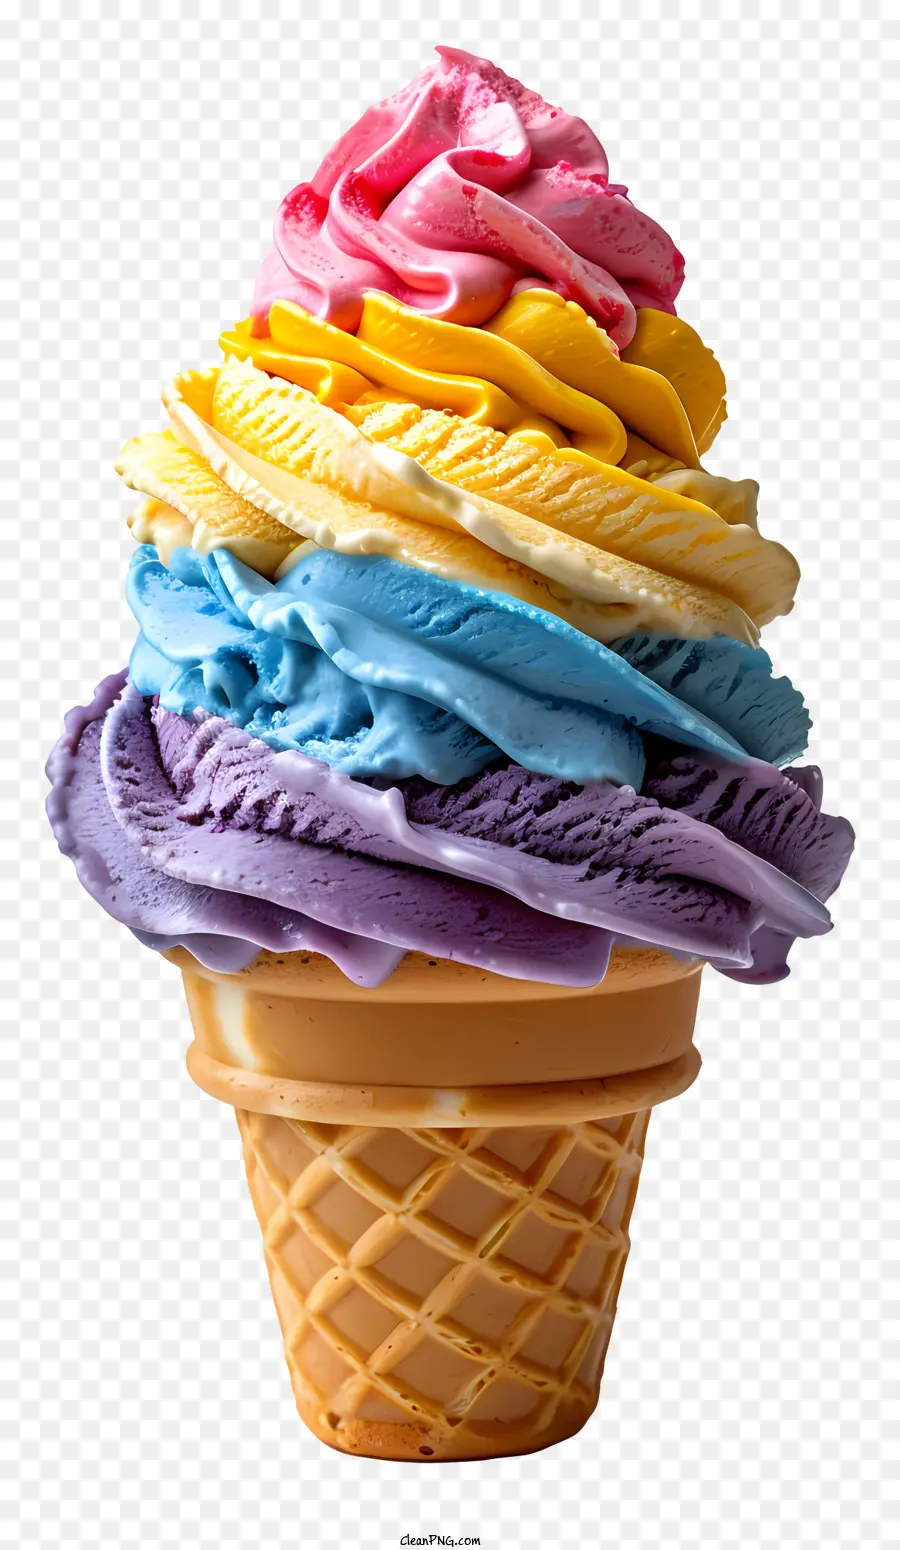 Rainbow Ice Cream Cream Cream Kem Swirled Kem Kem Hình nón Kem đầy màu sắc - Kem hình nón đầy màu sắc, thu hút sự chú ý và sôi động